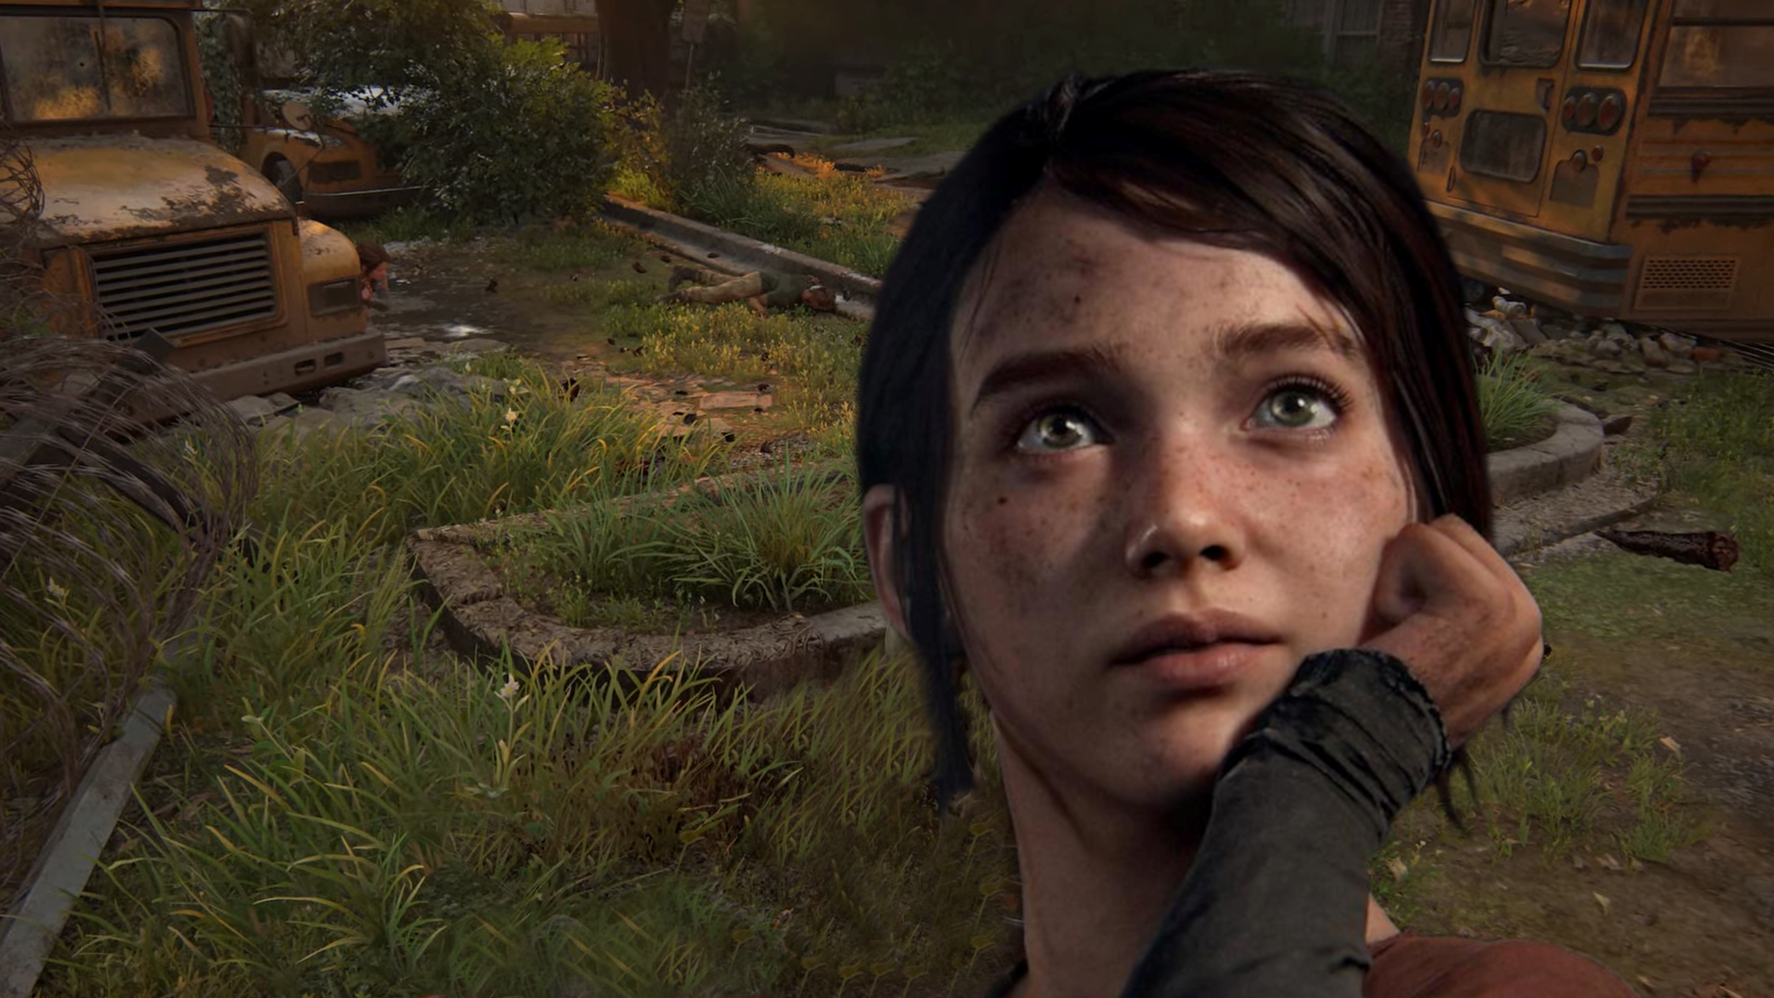 Bilder zu The Last of Us Staffel 2 erscheint frühestens Ende 2024, vermutet Bella Ramsey